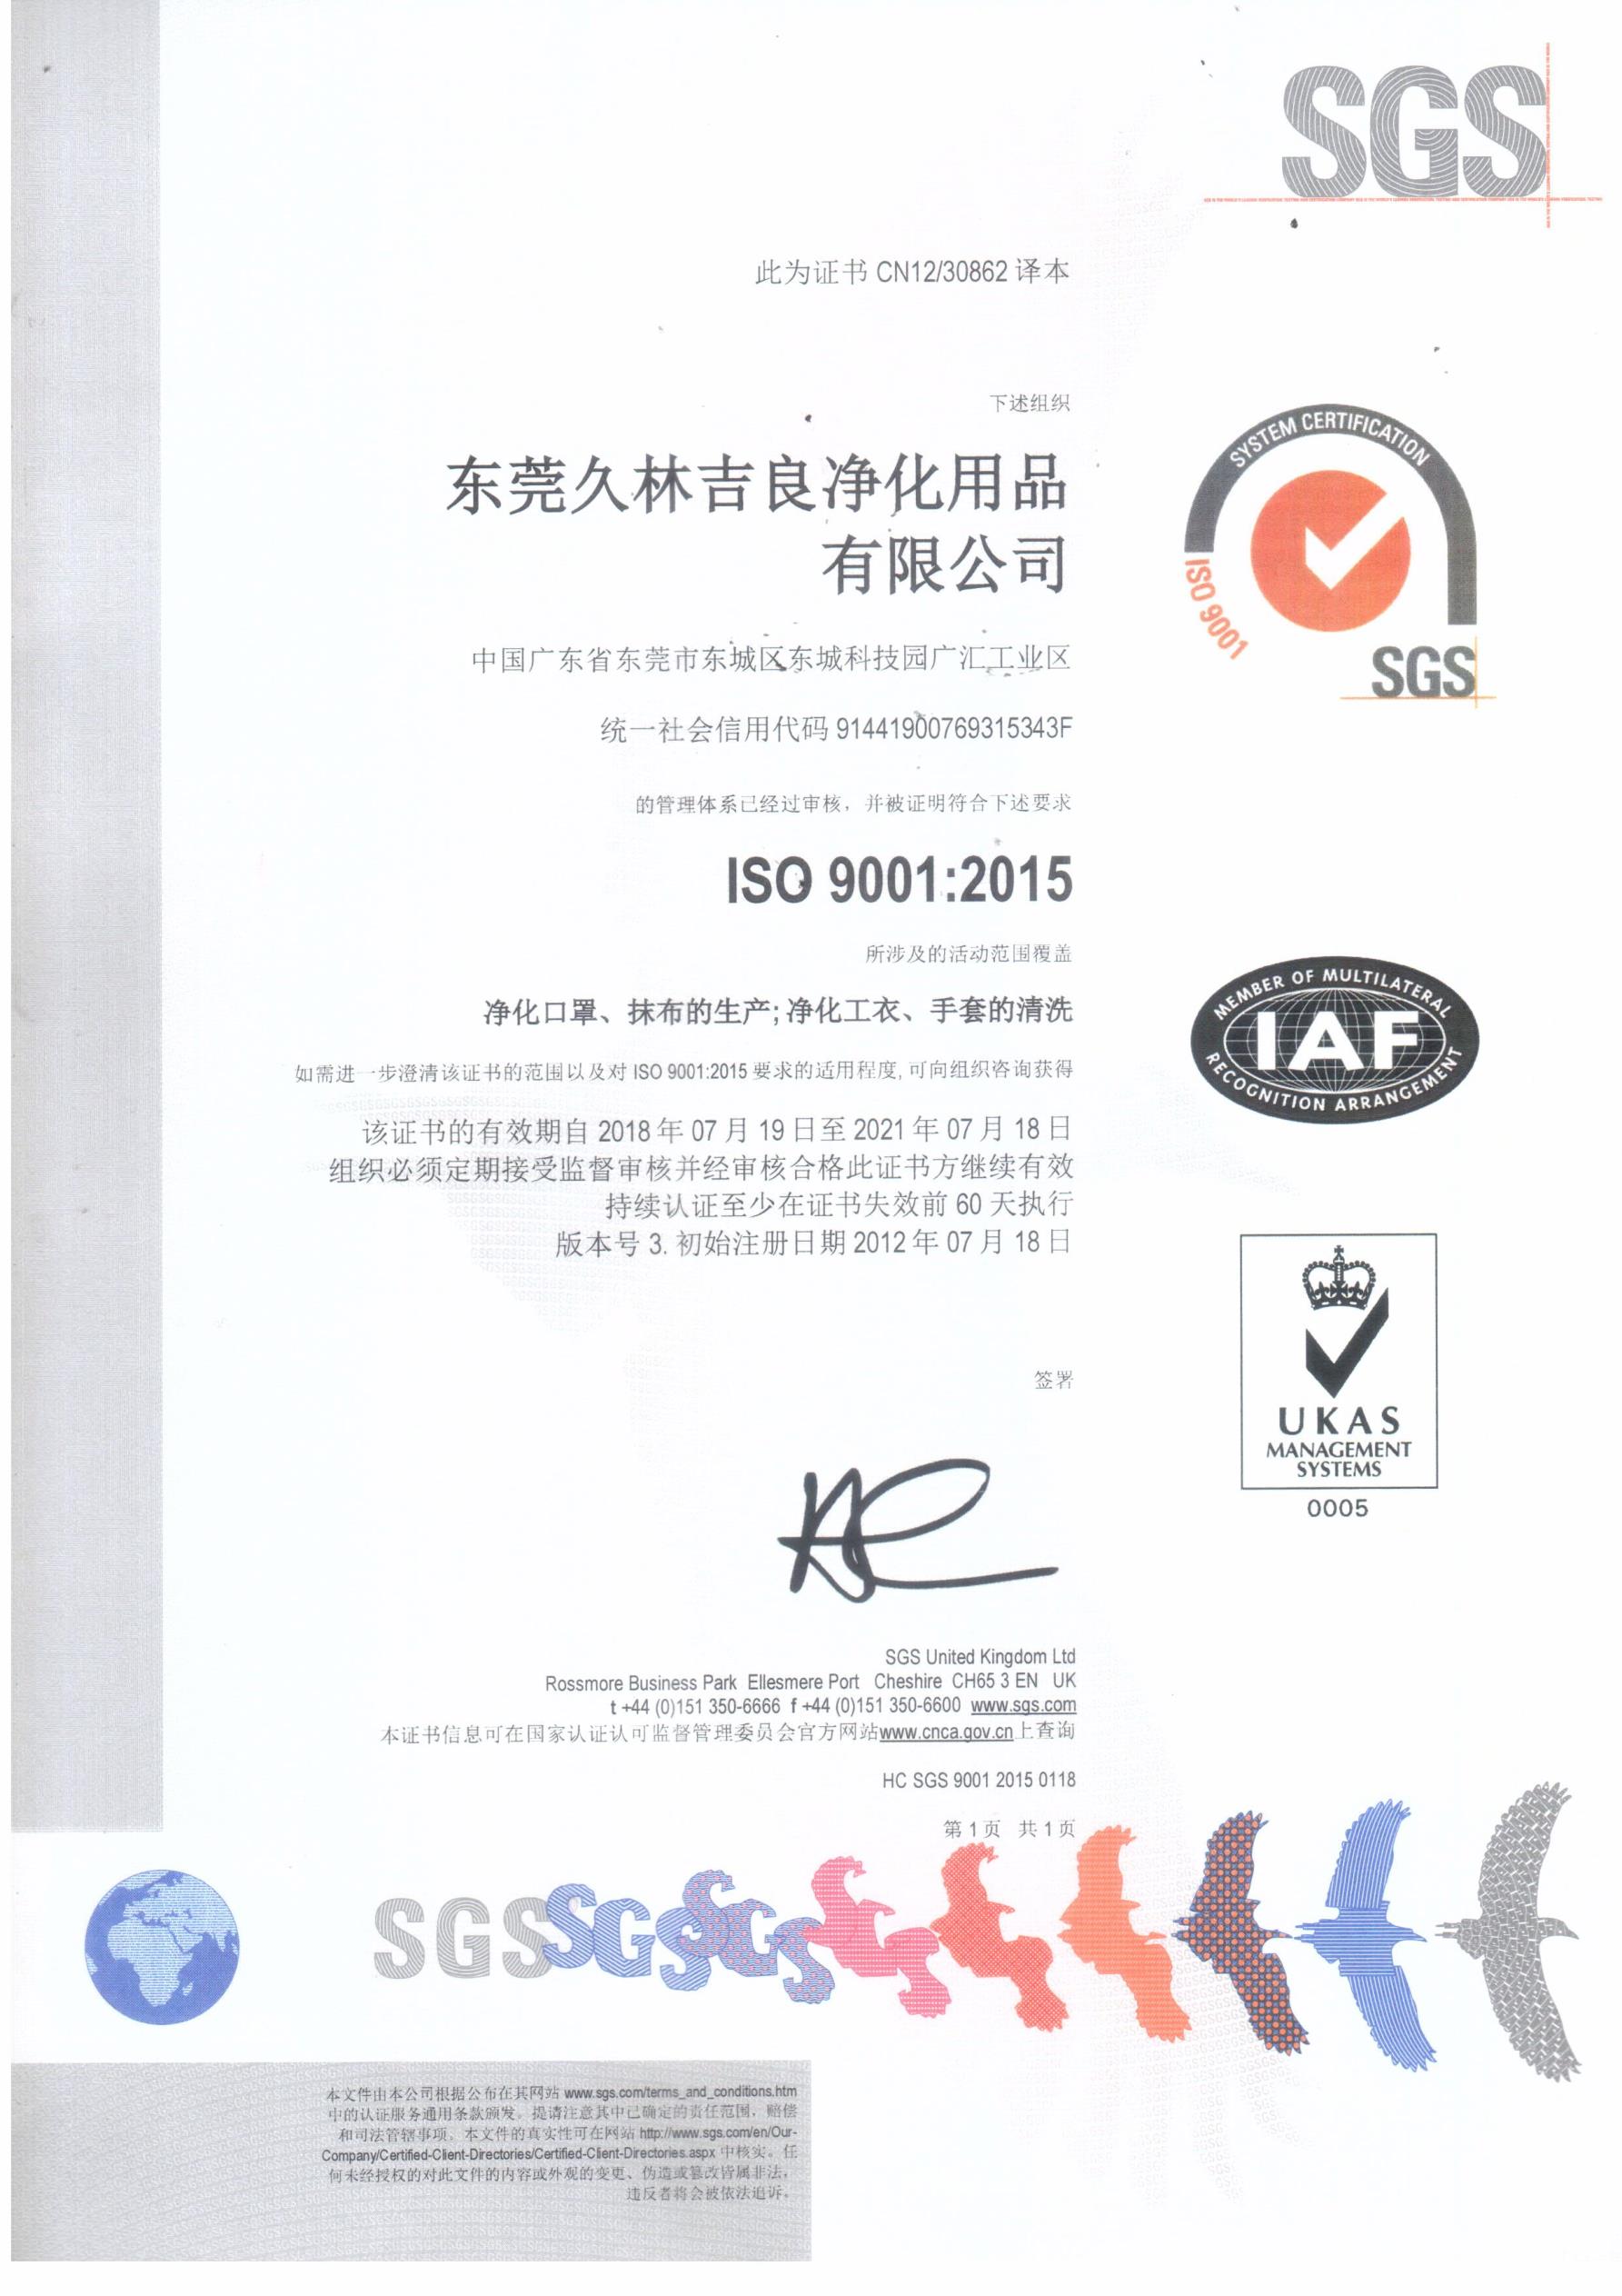 ISO cert (9001 )